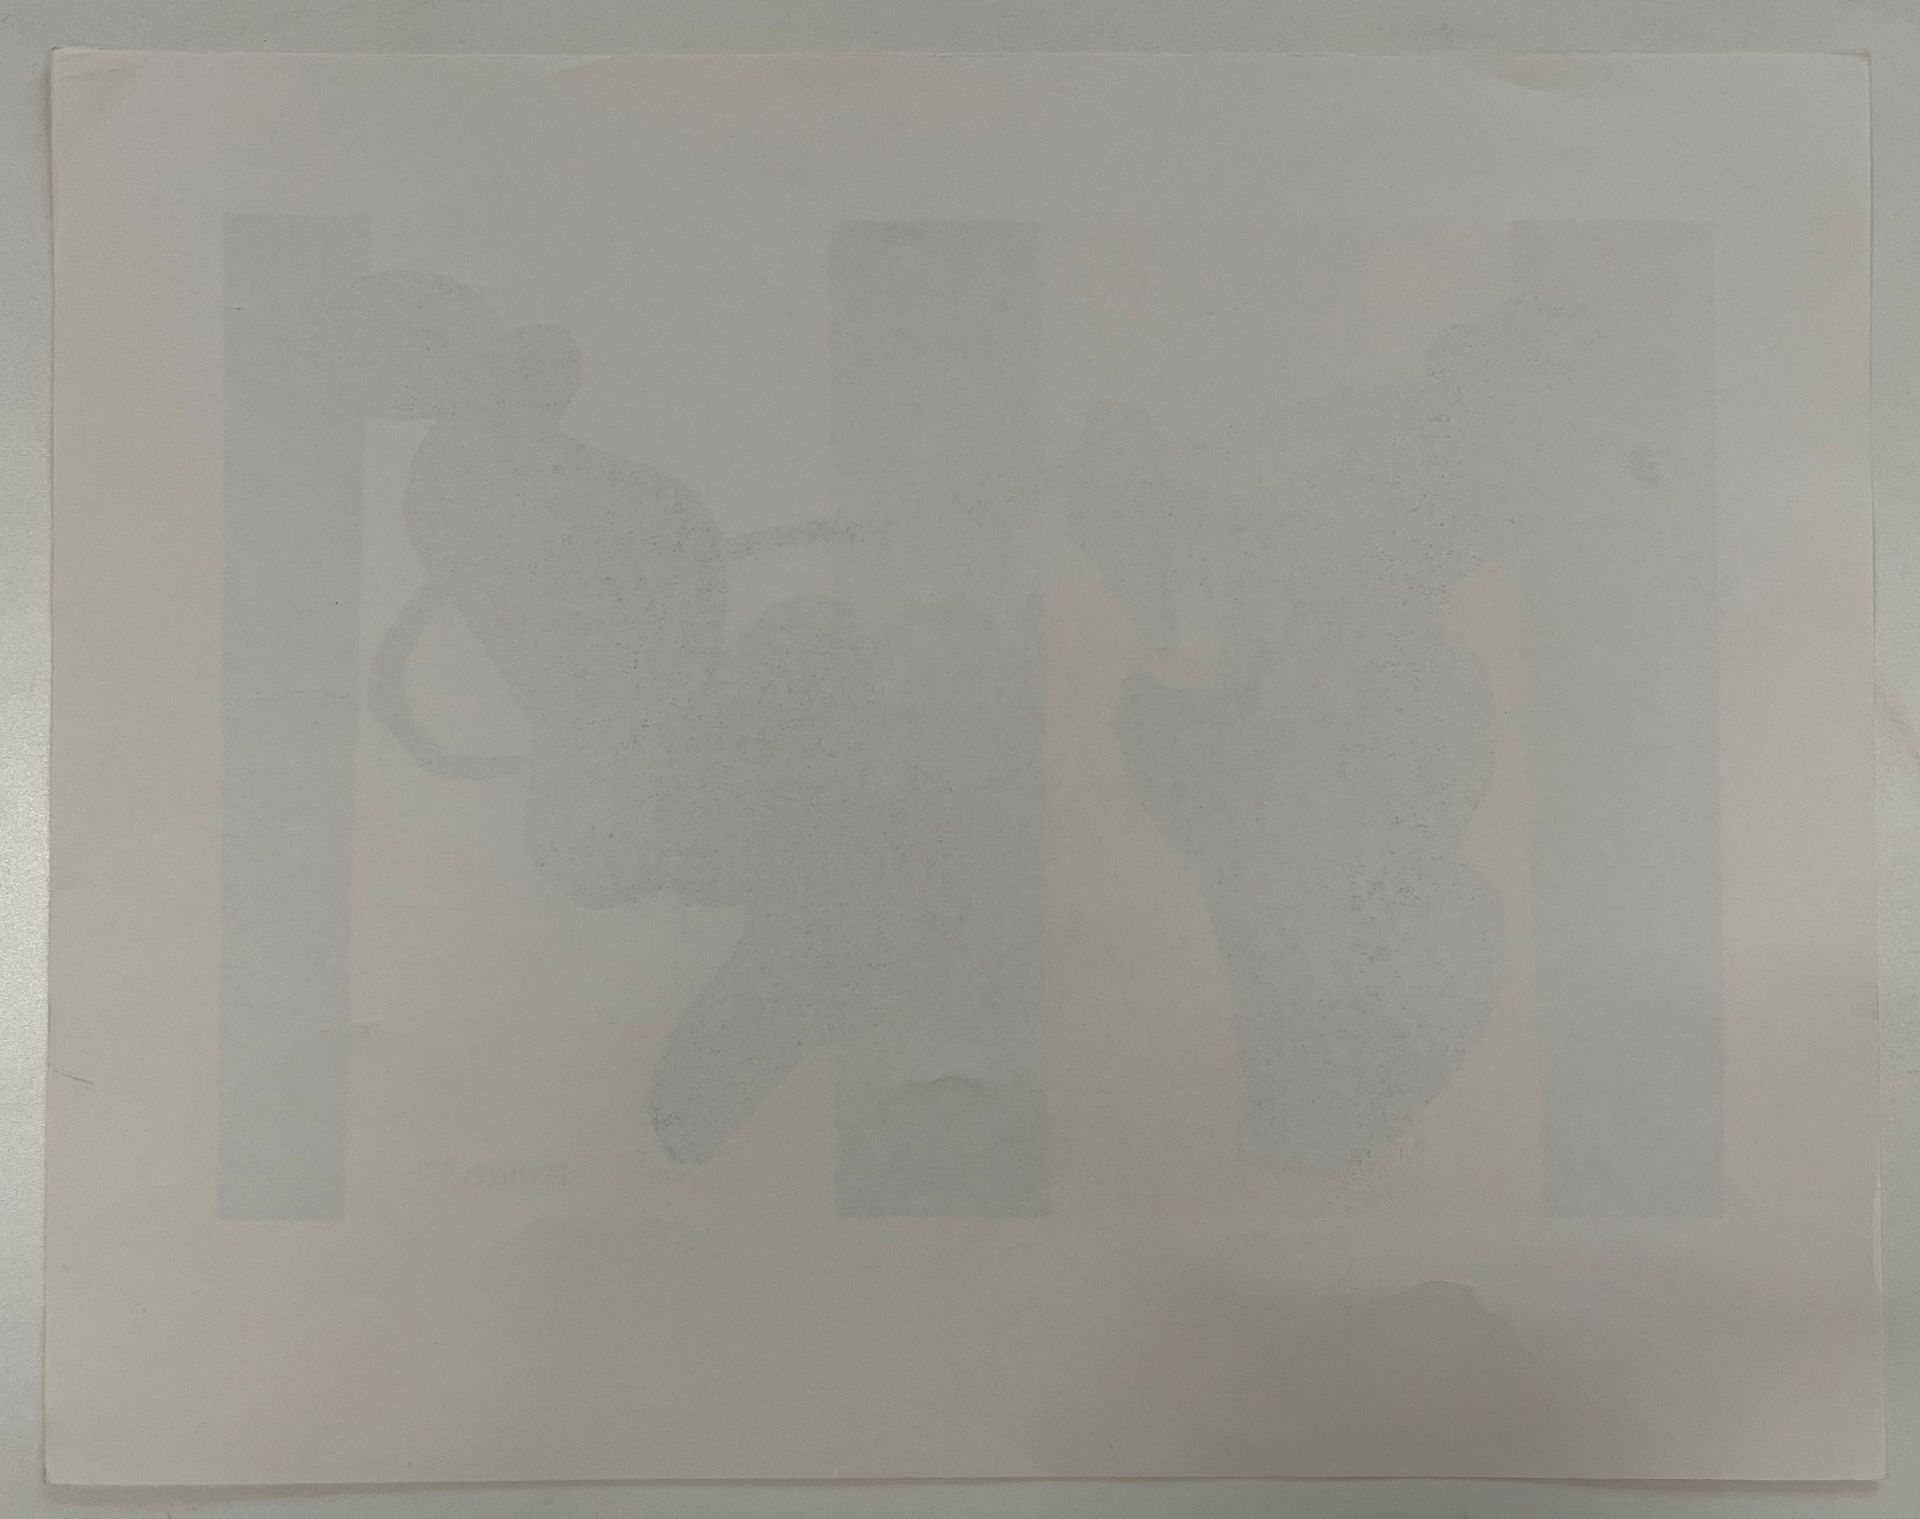 SEVEN VINTAGE LITHOGRAPHS ON PAPER AFTER HENRI MATISSE - Image 3 of 22